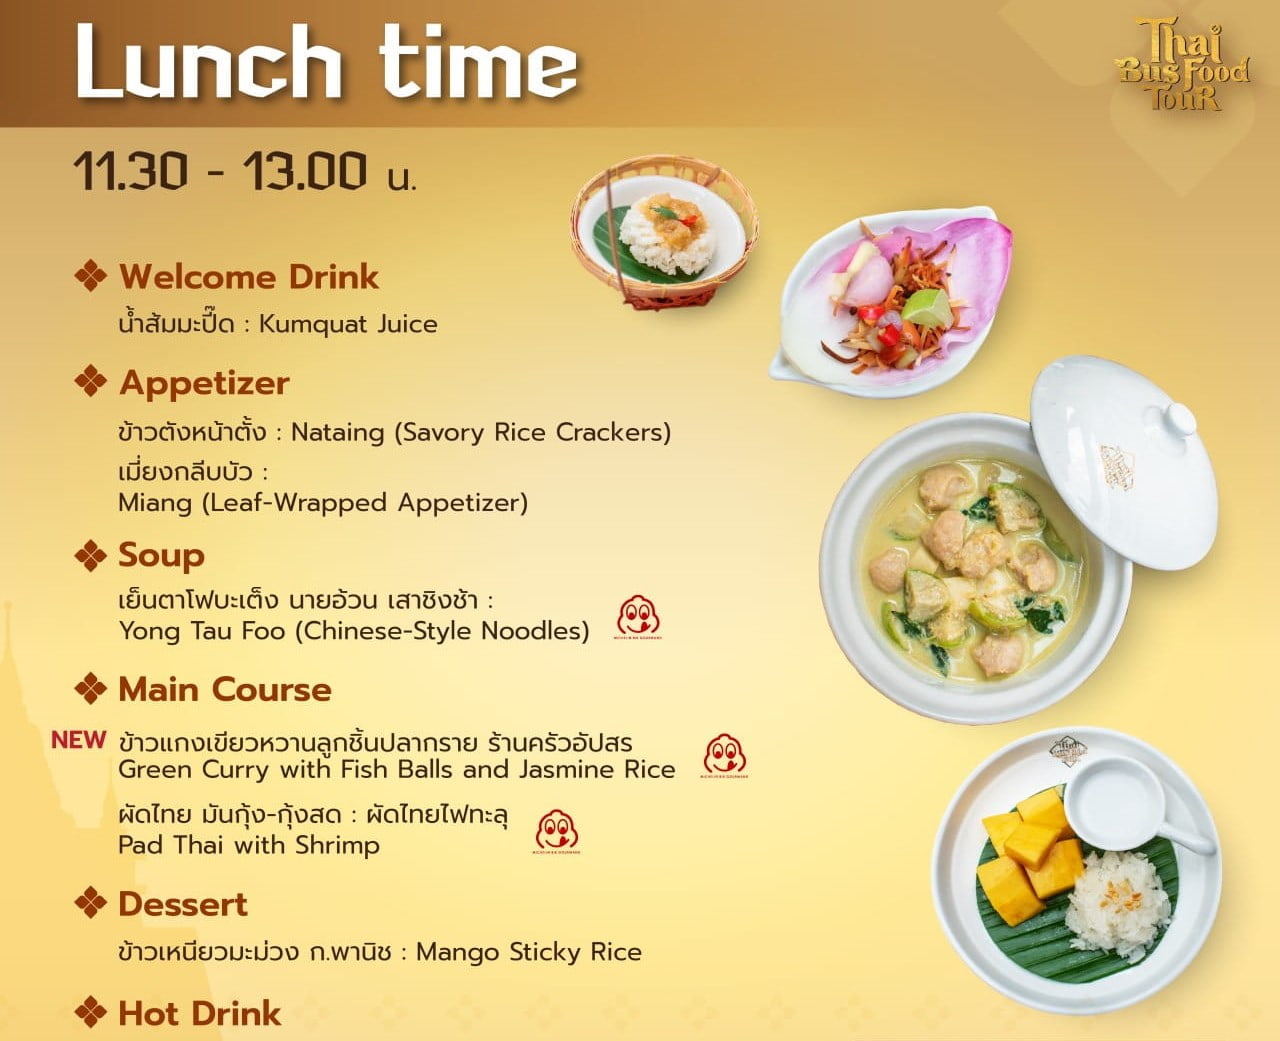 เมนูอาหารของ Thai Bus Food Tour รอบอาหารกลางวัน